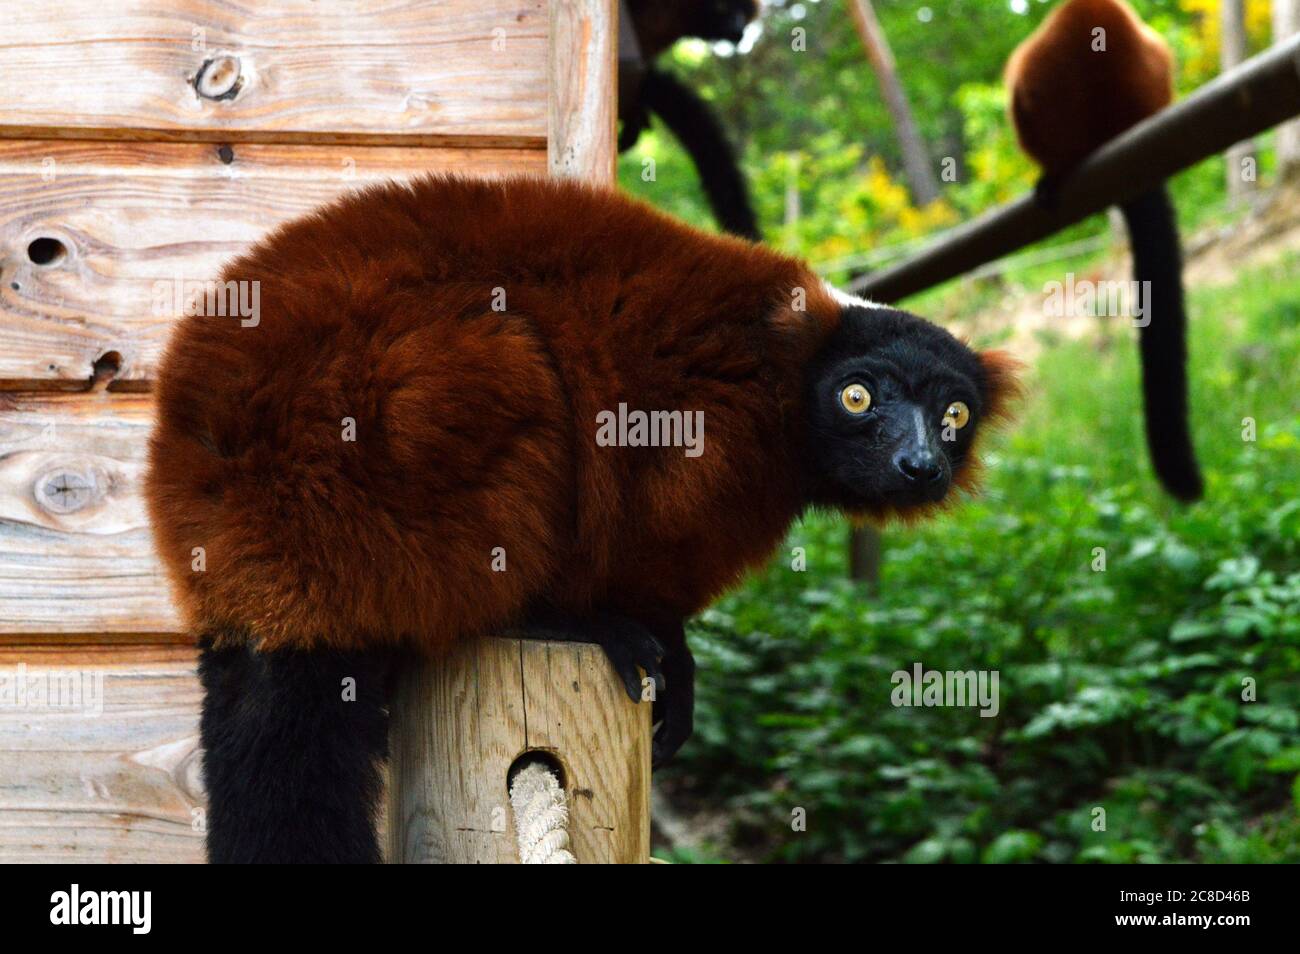 Magnifico lemure rosso con volant, è una scimmia tipo lemuridae. Questo è un animale in pericolo. Foto Stock